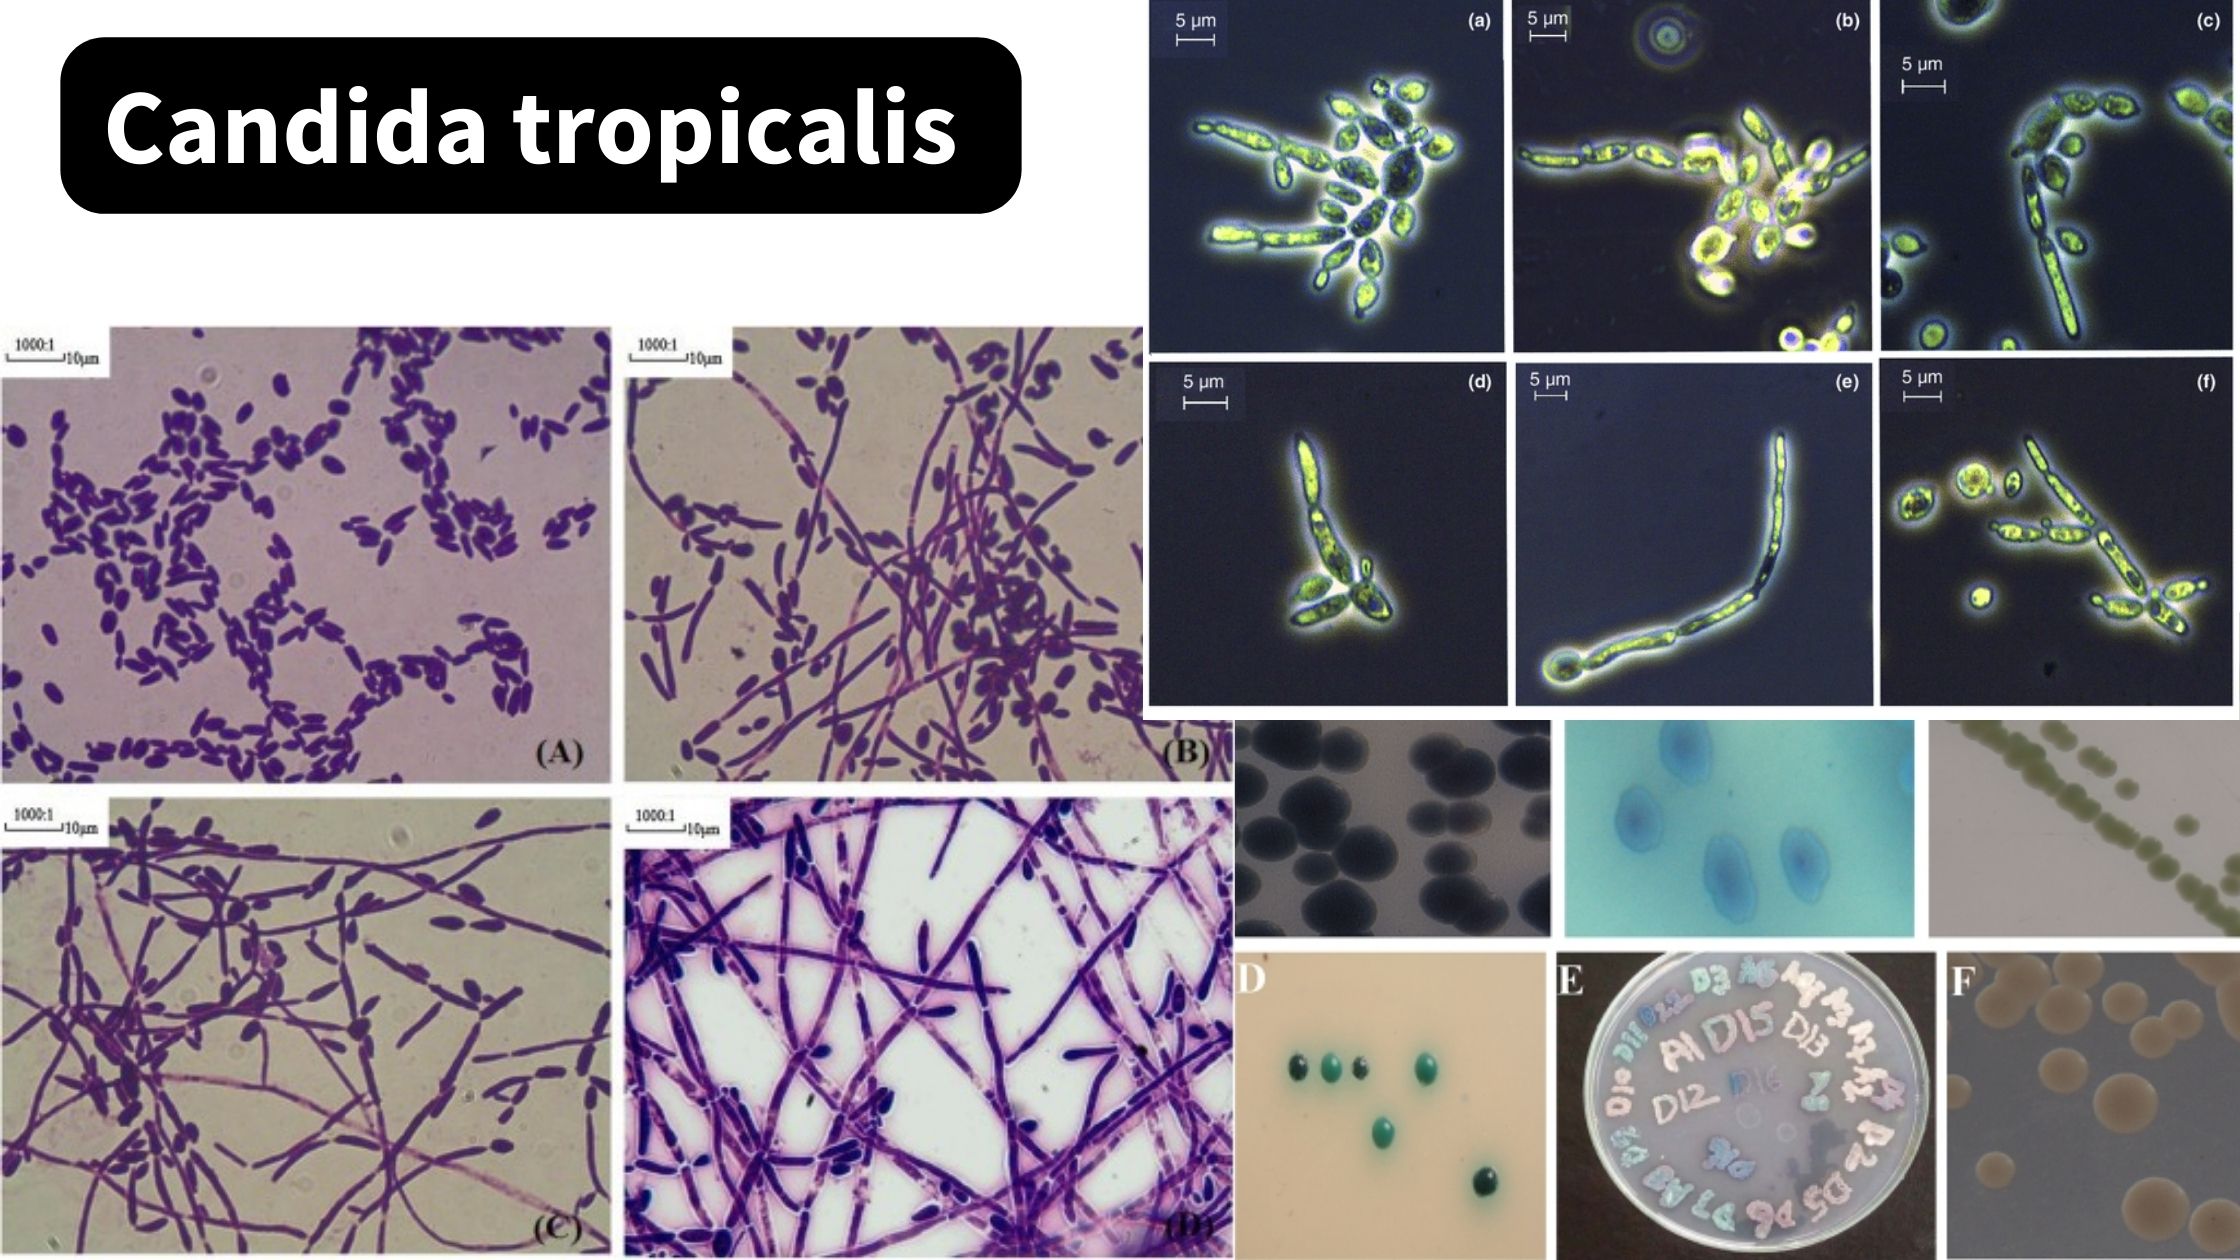 Candida tropicalis - Morphology, Pathogenesis, Transmisssion, Treatment